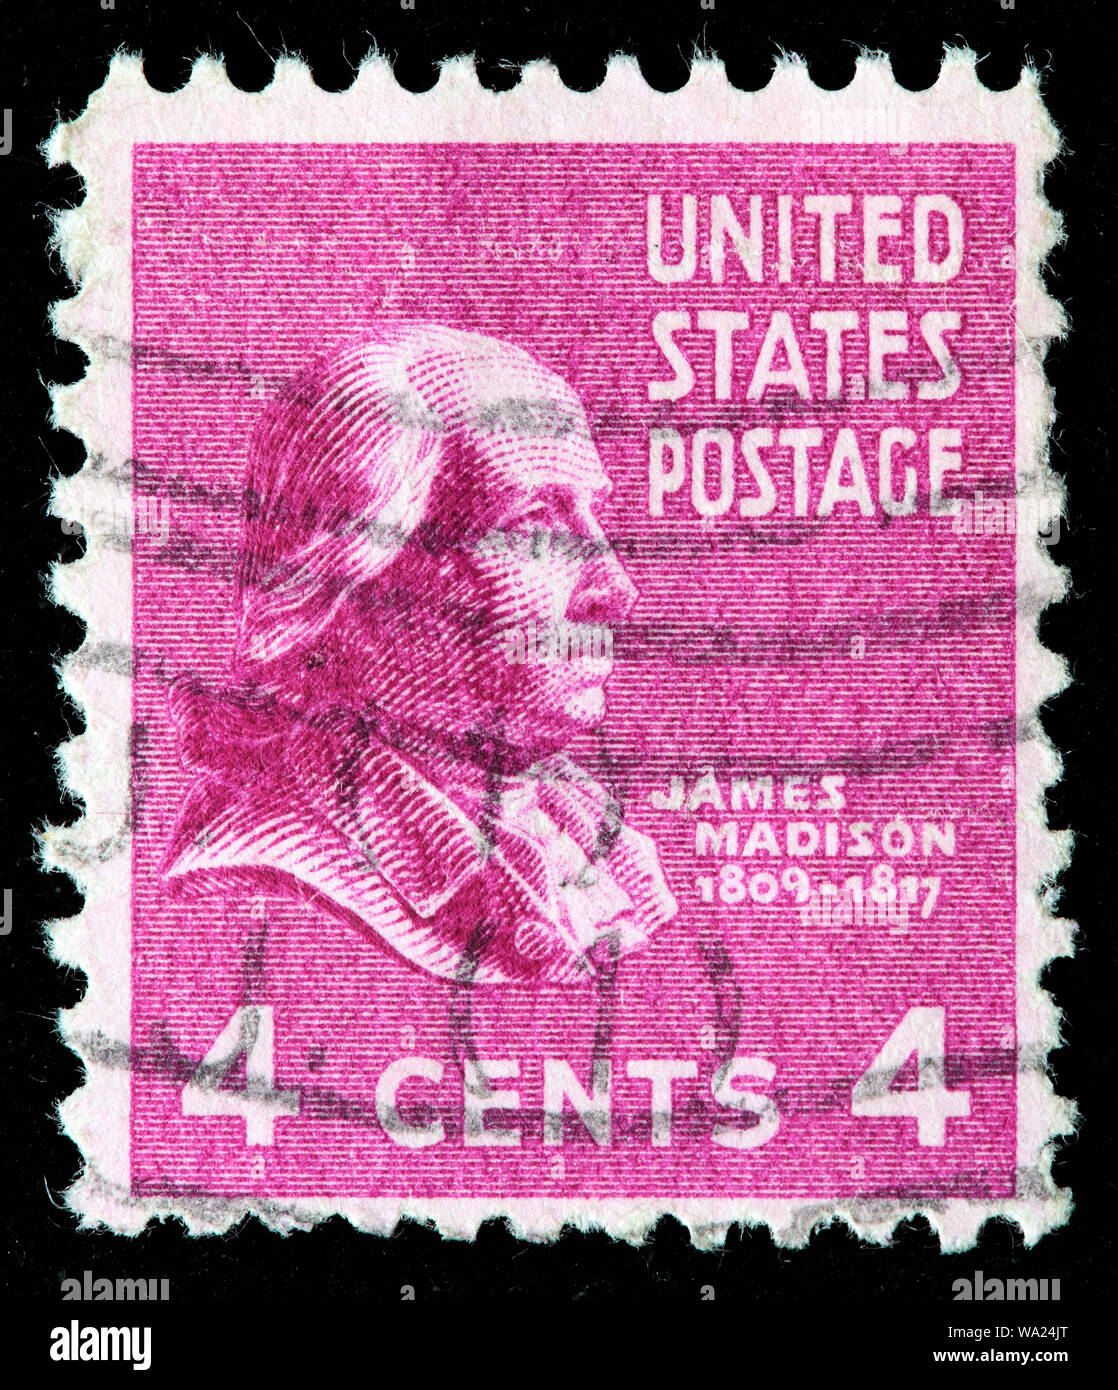 James Madison (1751-1836), President of USA, postage stamp, USA, 1938 Stock Photo